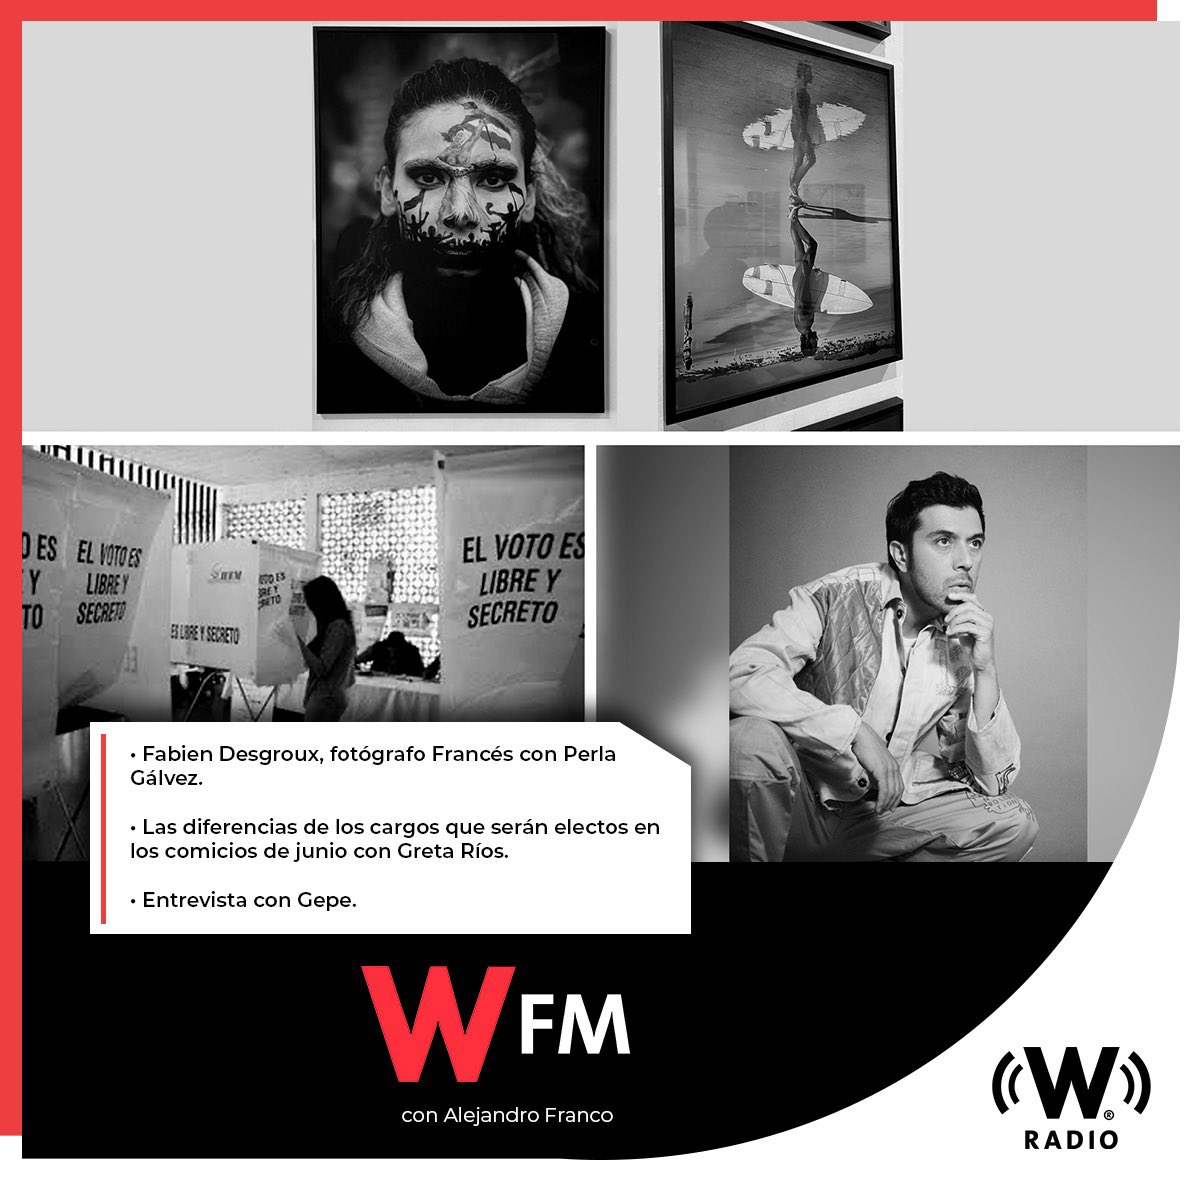 Este 9 de abril en #WFMWRadio:
- @Perliurix presenta una entrevista con el fotógrafo francés, @FabienDesgroux.
- @gretadice nos explica las diferencias entre los cargos que serán electos en los comicios del mes de junio.
- Entrevista con @gepegepegepe.